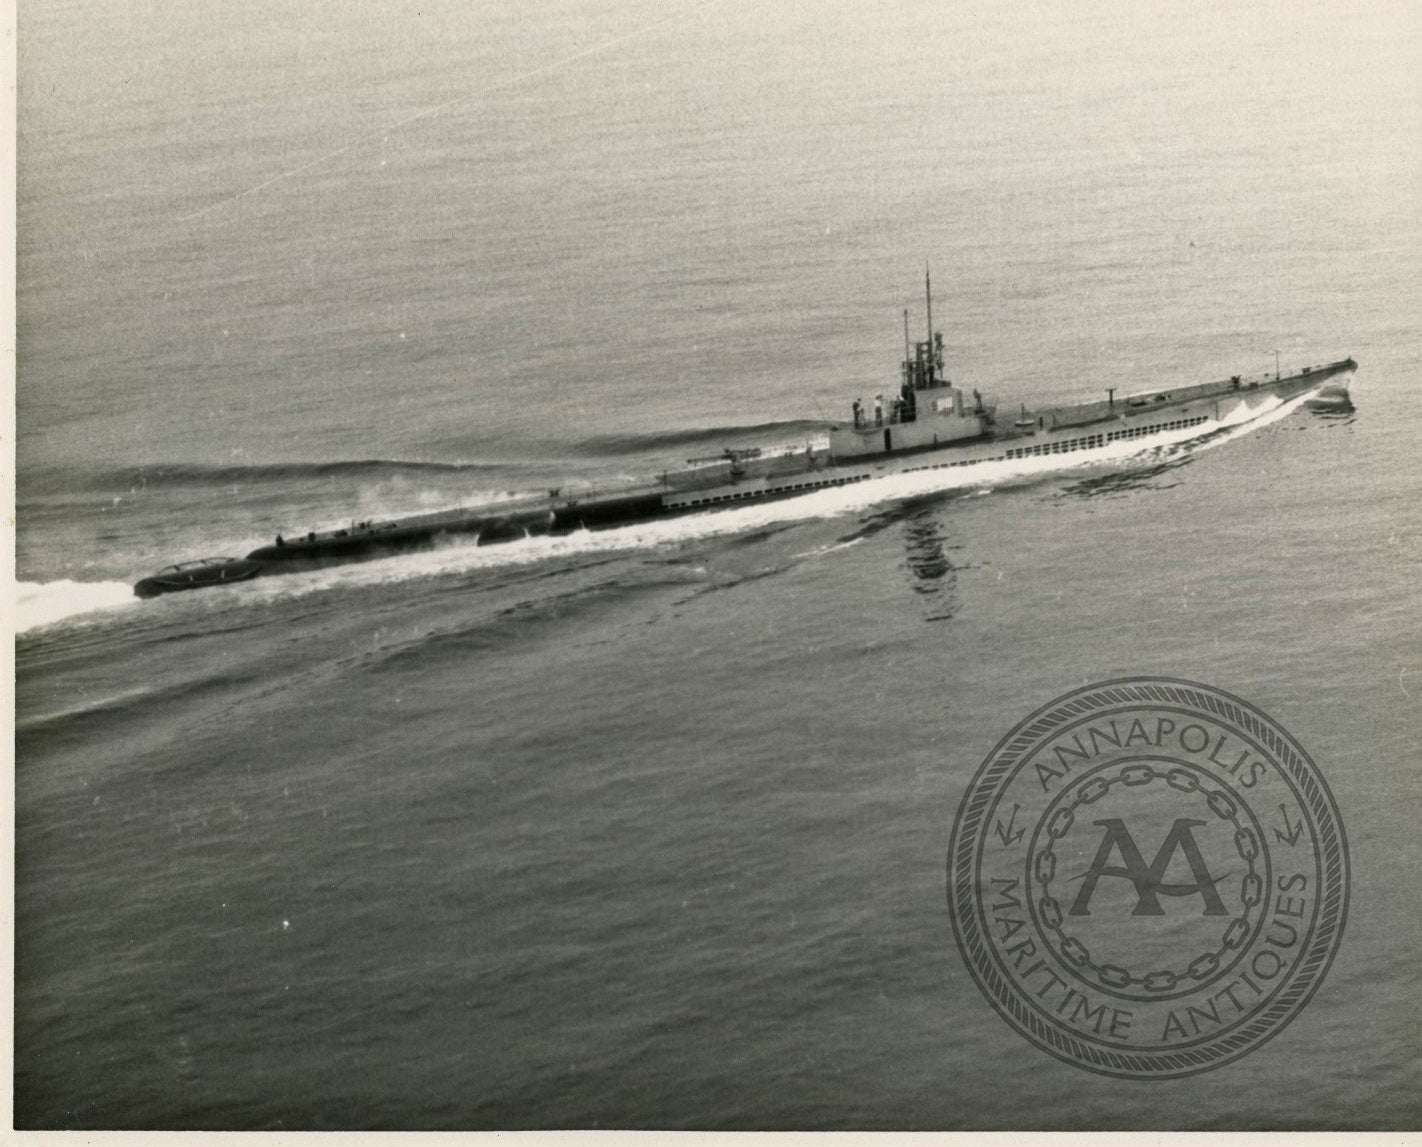 USS Thresher (SS-200) Submarine